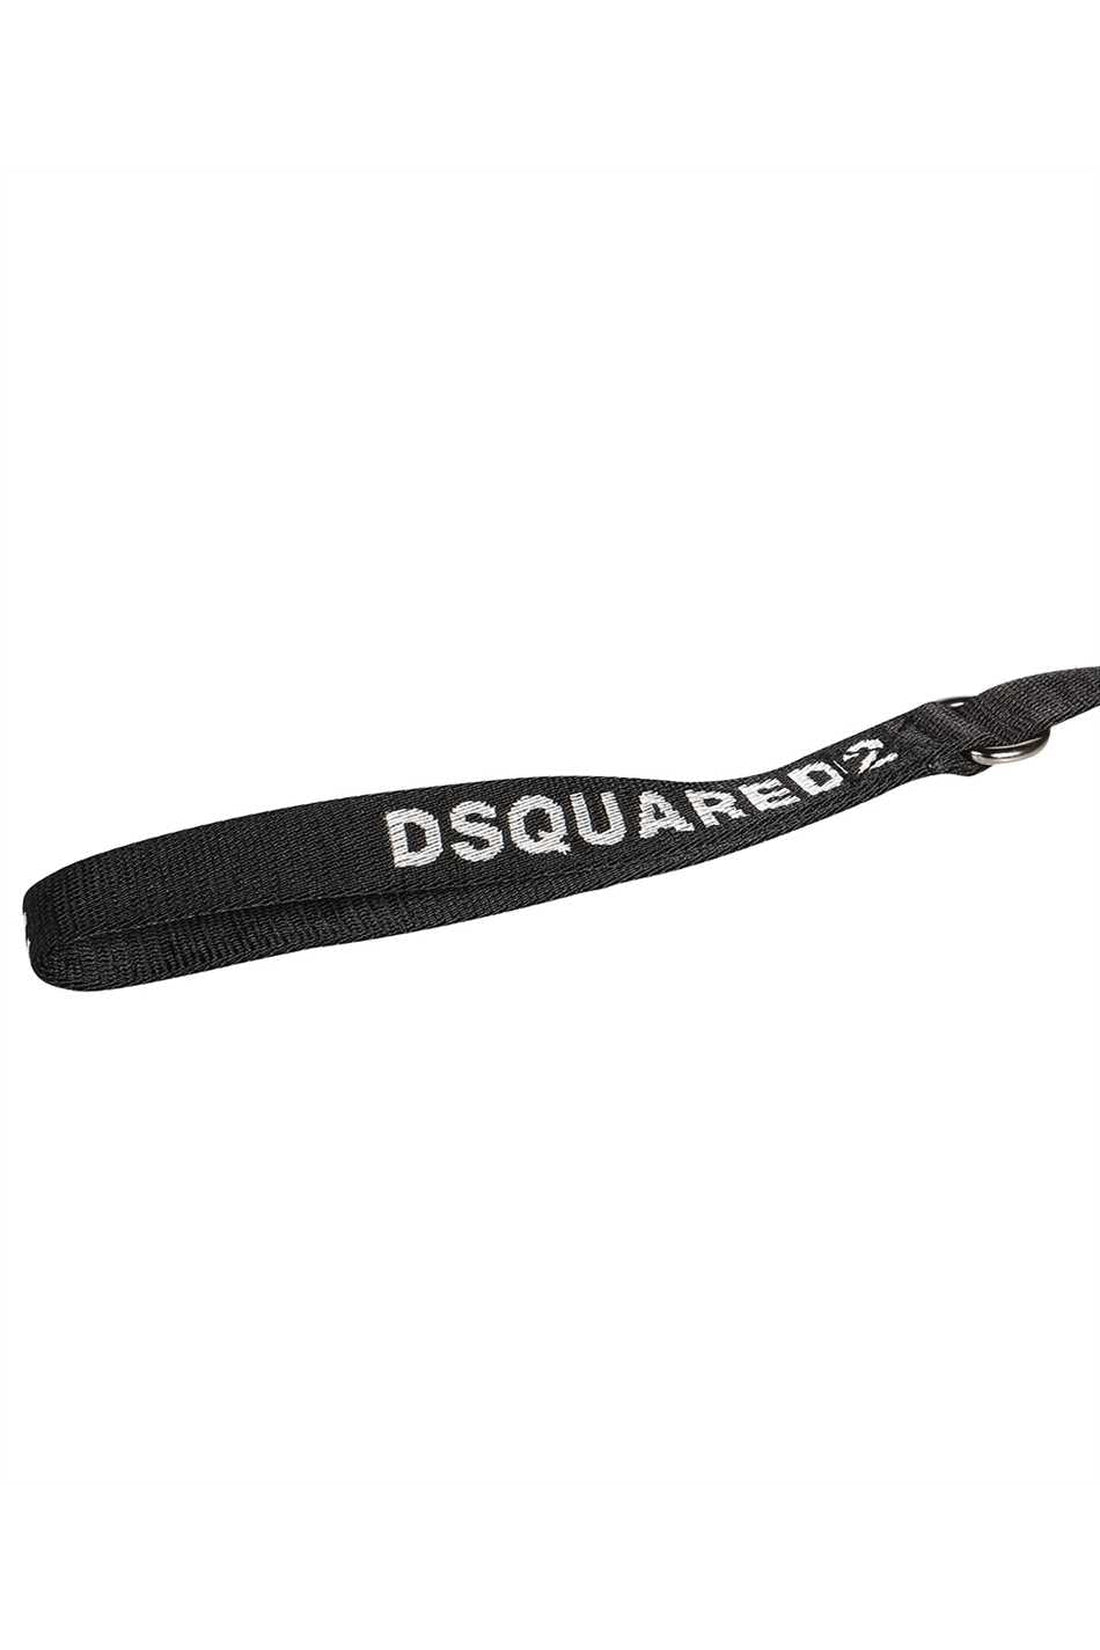 Dsquared2-OUTLET-SALE-POLDO X D2 - Dog leash-ARCHIVIST